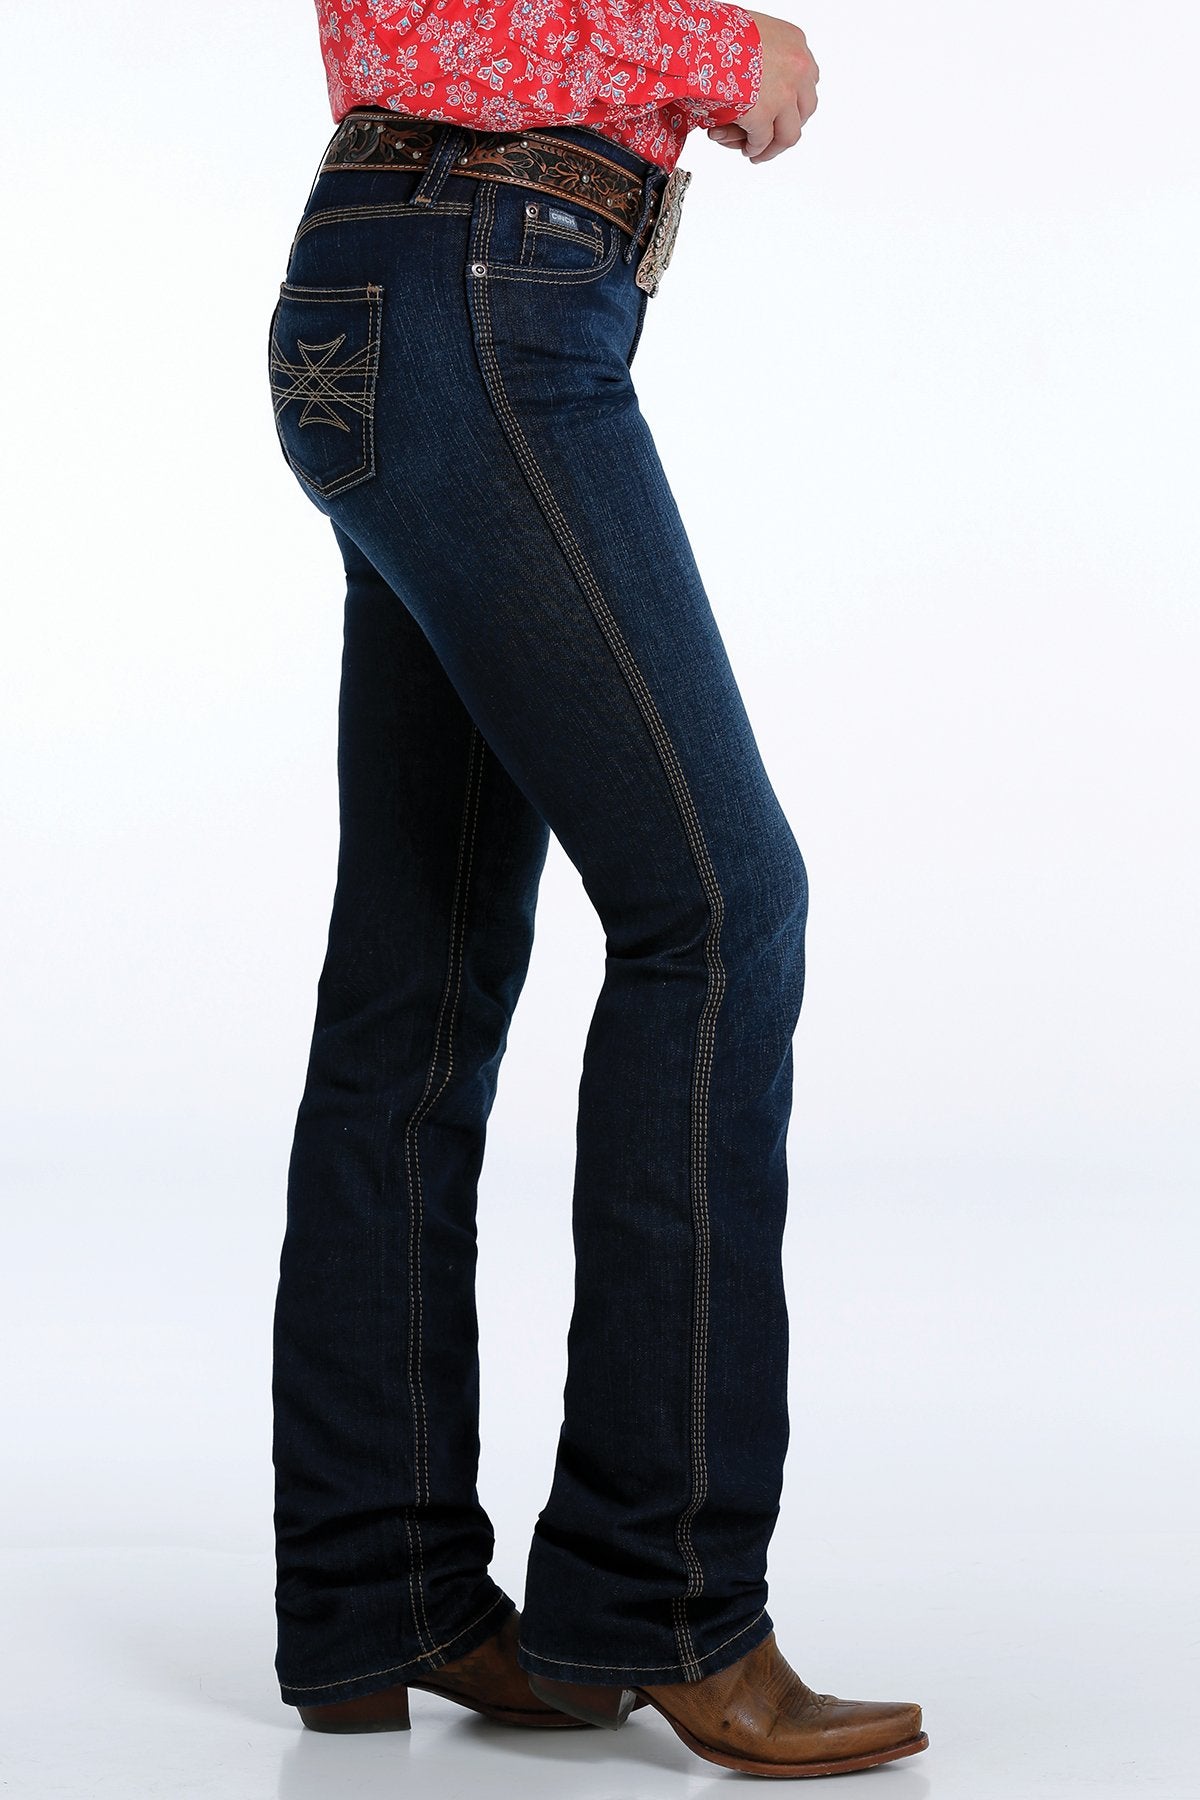 Cinch Shannon Ladies Slim Fit Jeans - MJ82553001